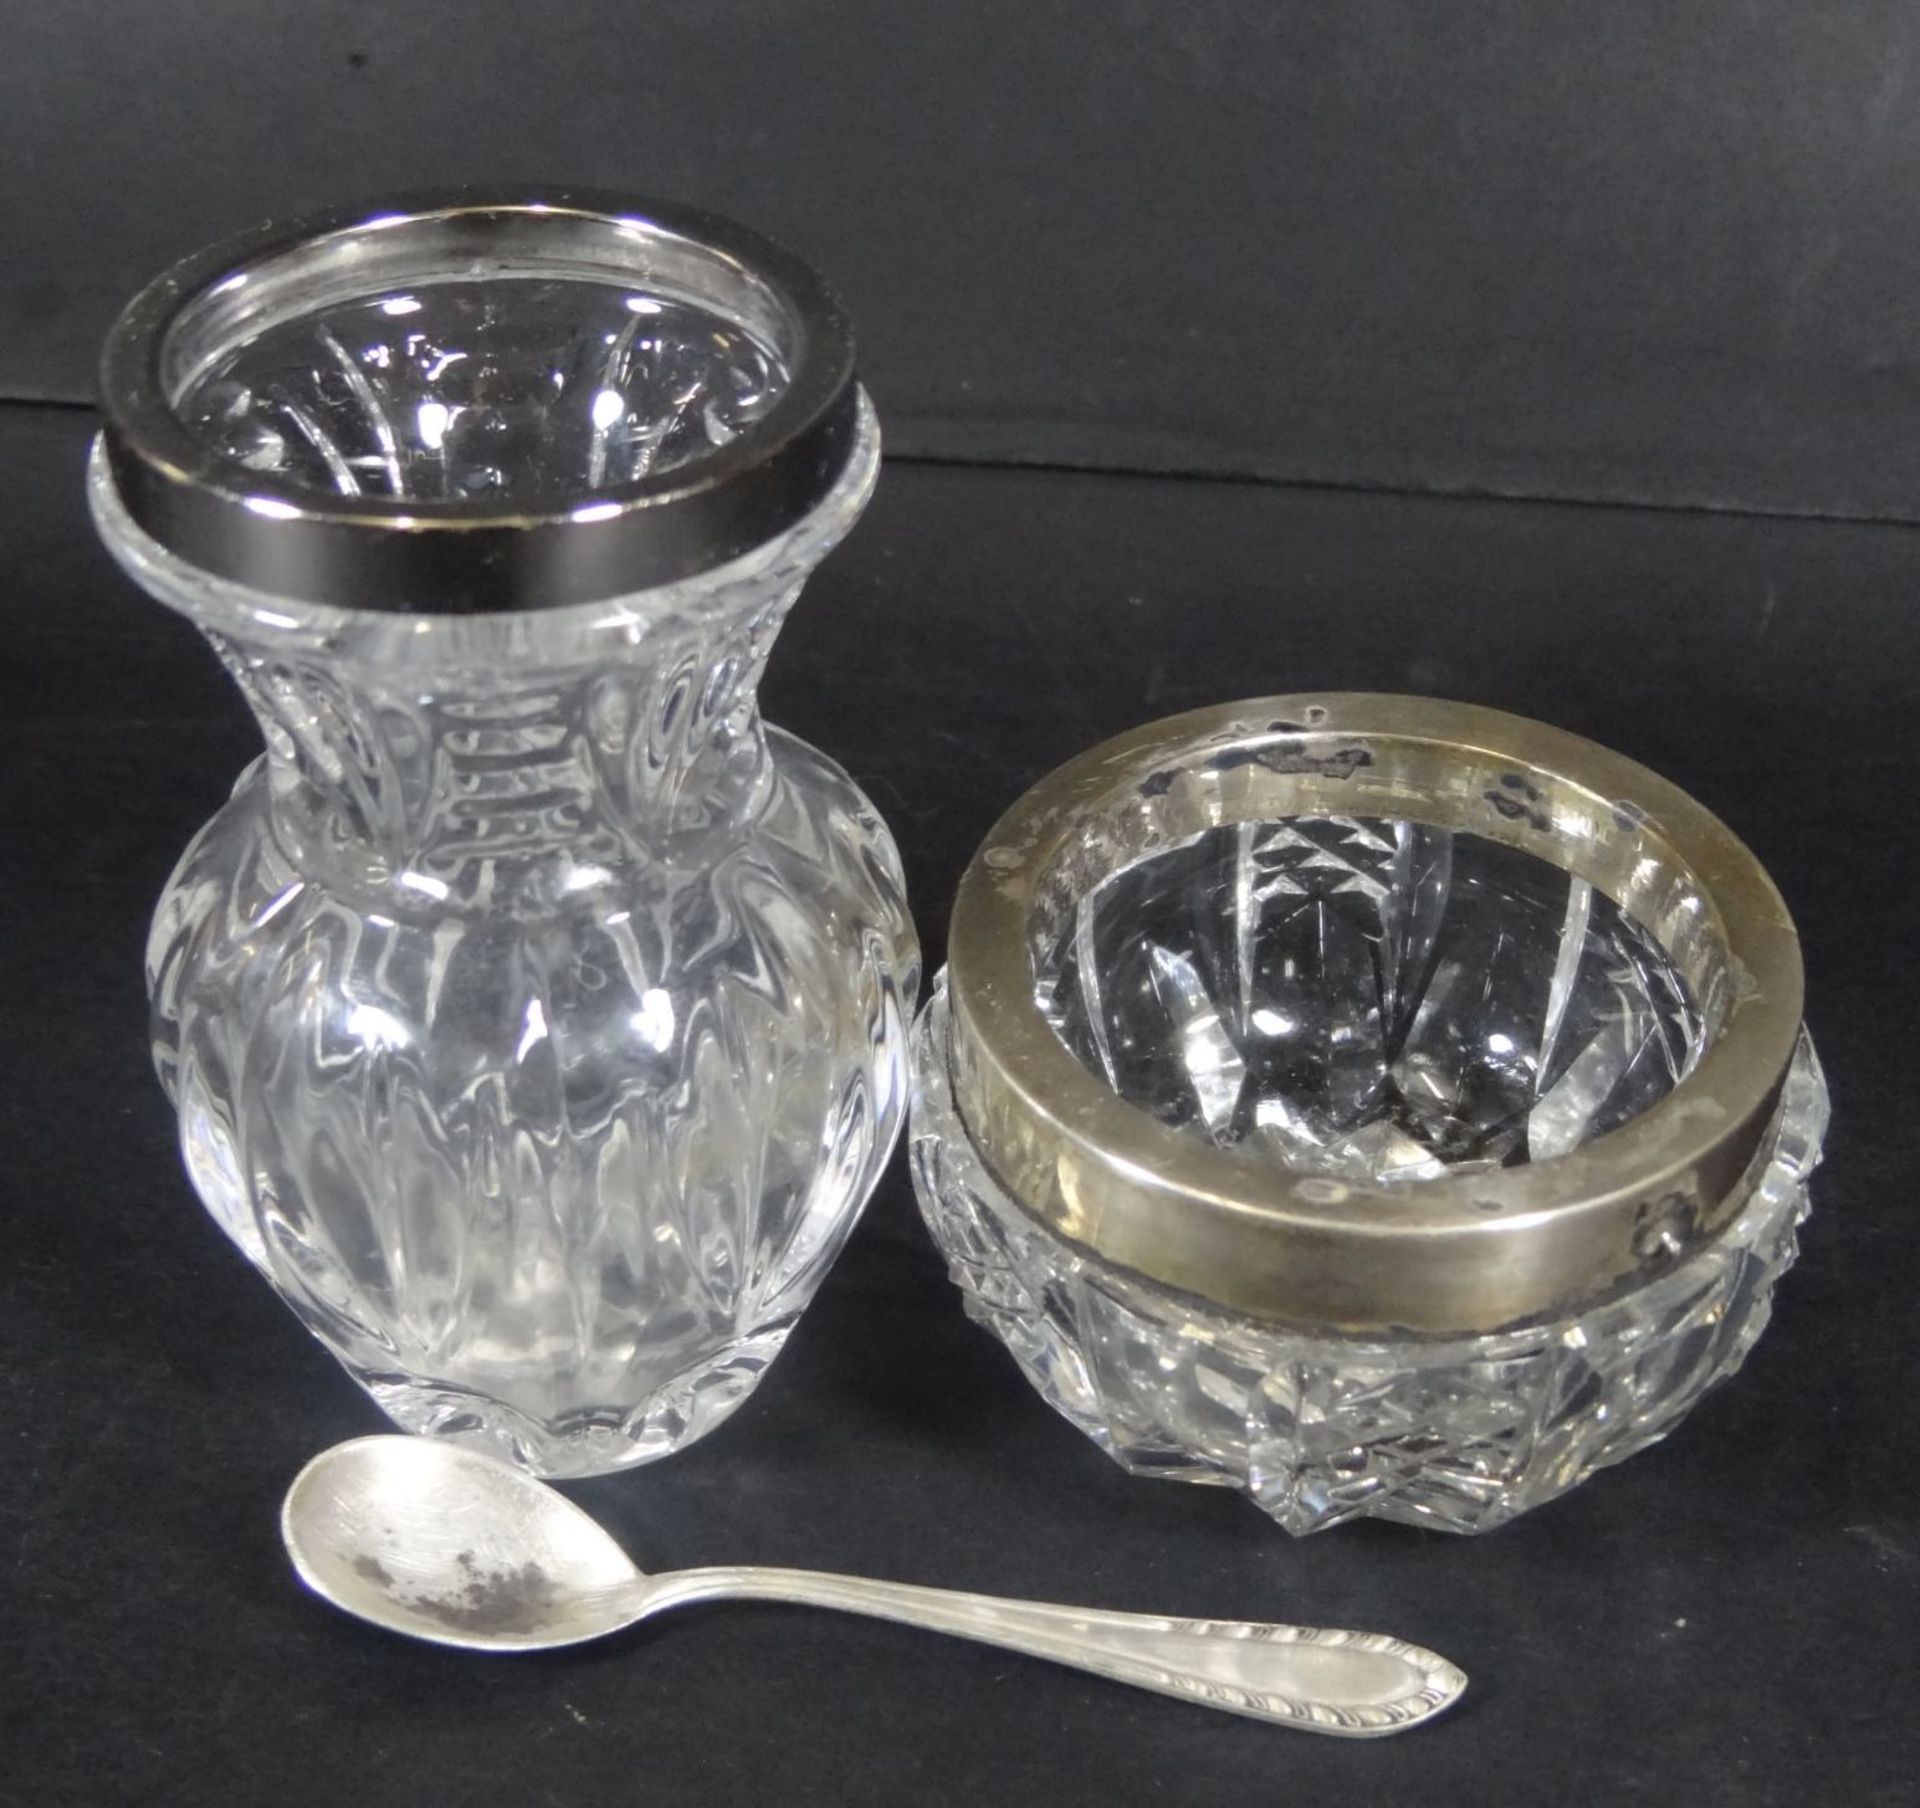 kl. Gewürzschälchen mit Silberlöffel, kl. Vase mit Silberrand-800-, H-3.5 und 7,5- - -22.61 % - Bild 2 aus 6